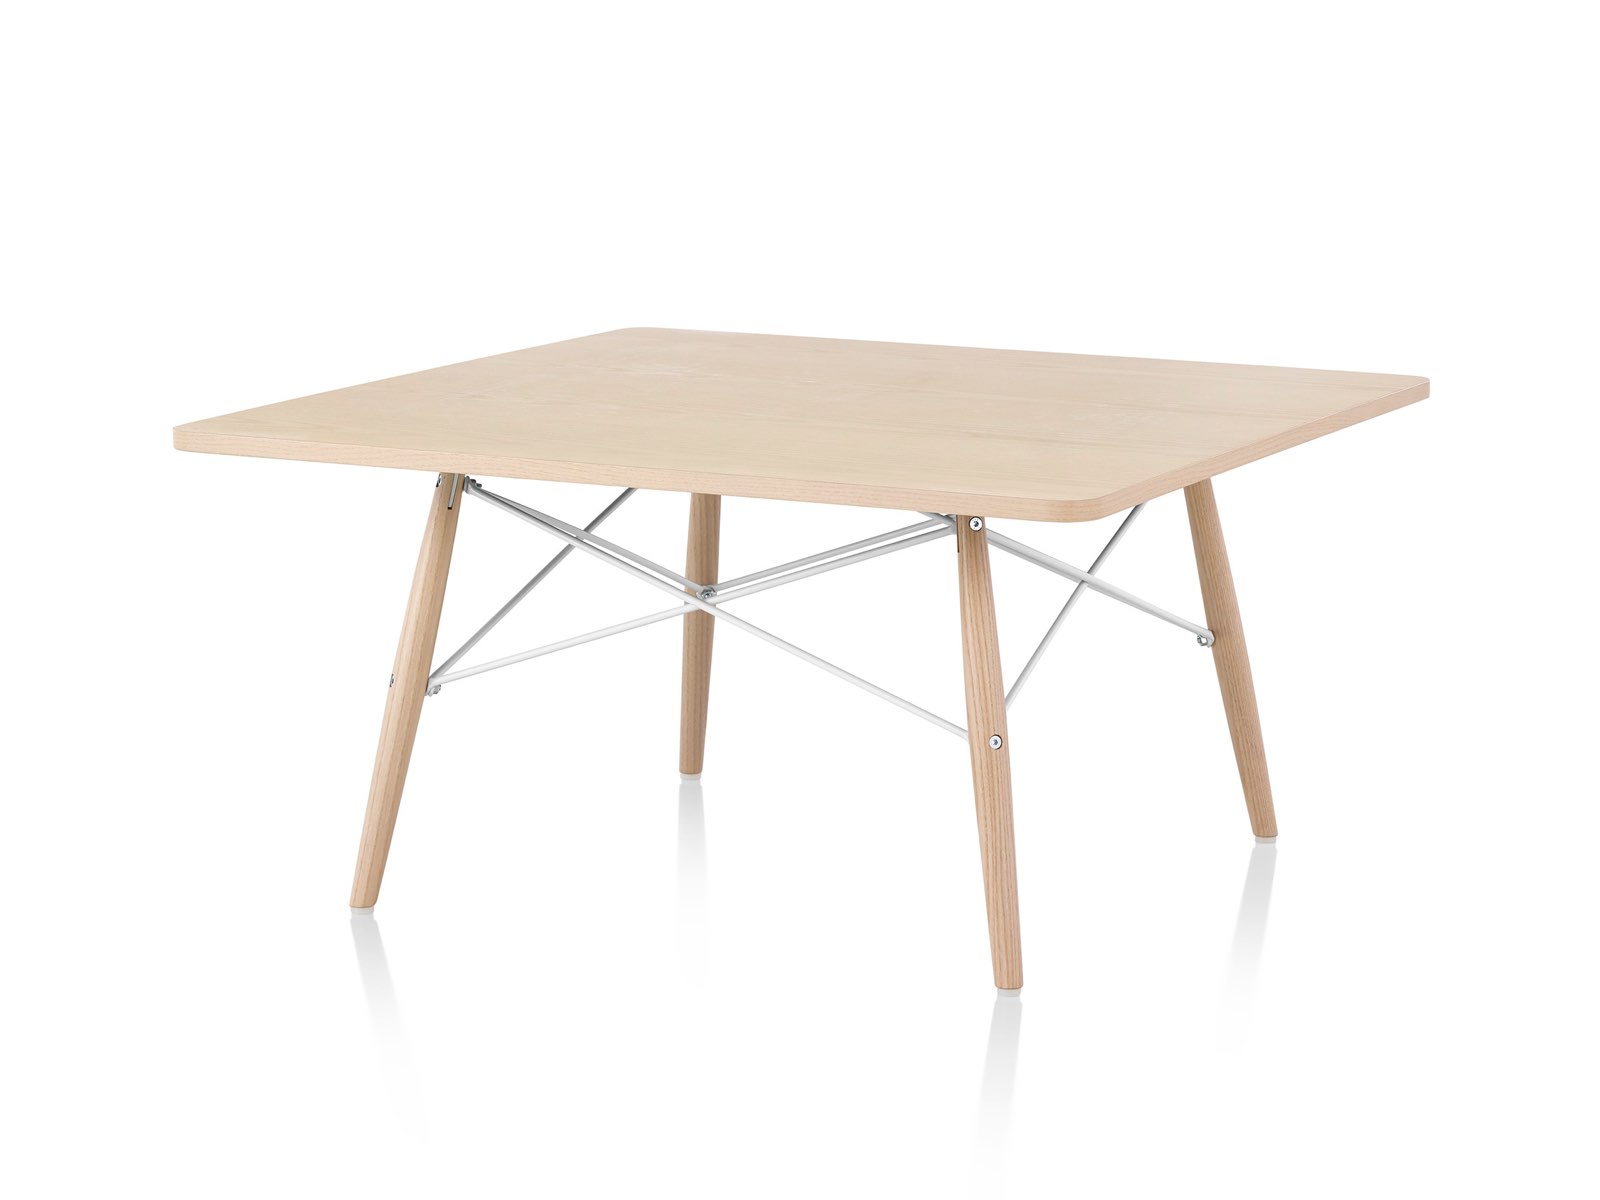 Uma vista angular de uma mesa de café Eames com pernas de madeira, cruzes metálicas e um tampo de madeira clara.